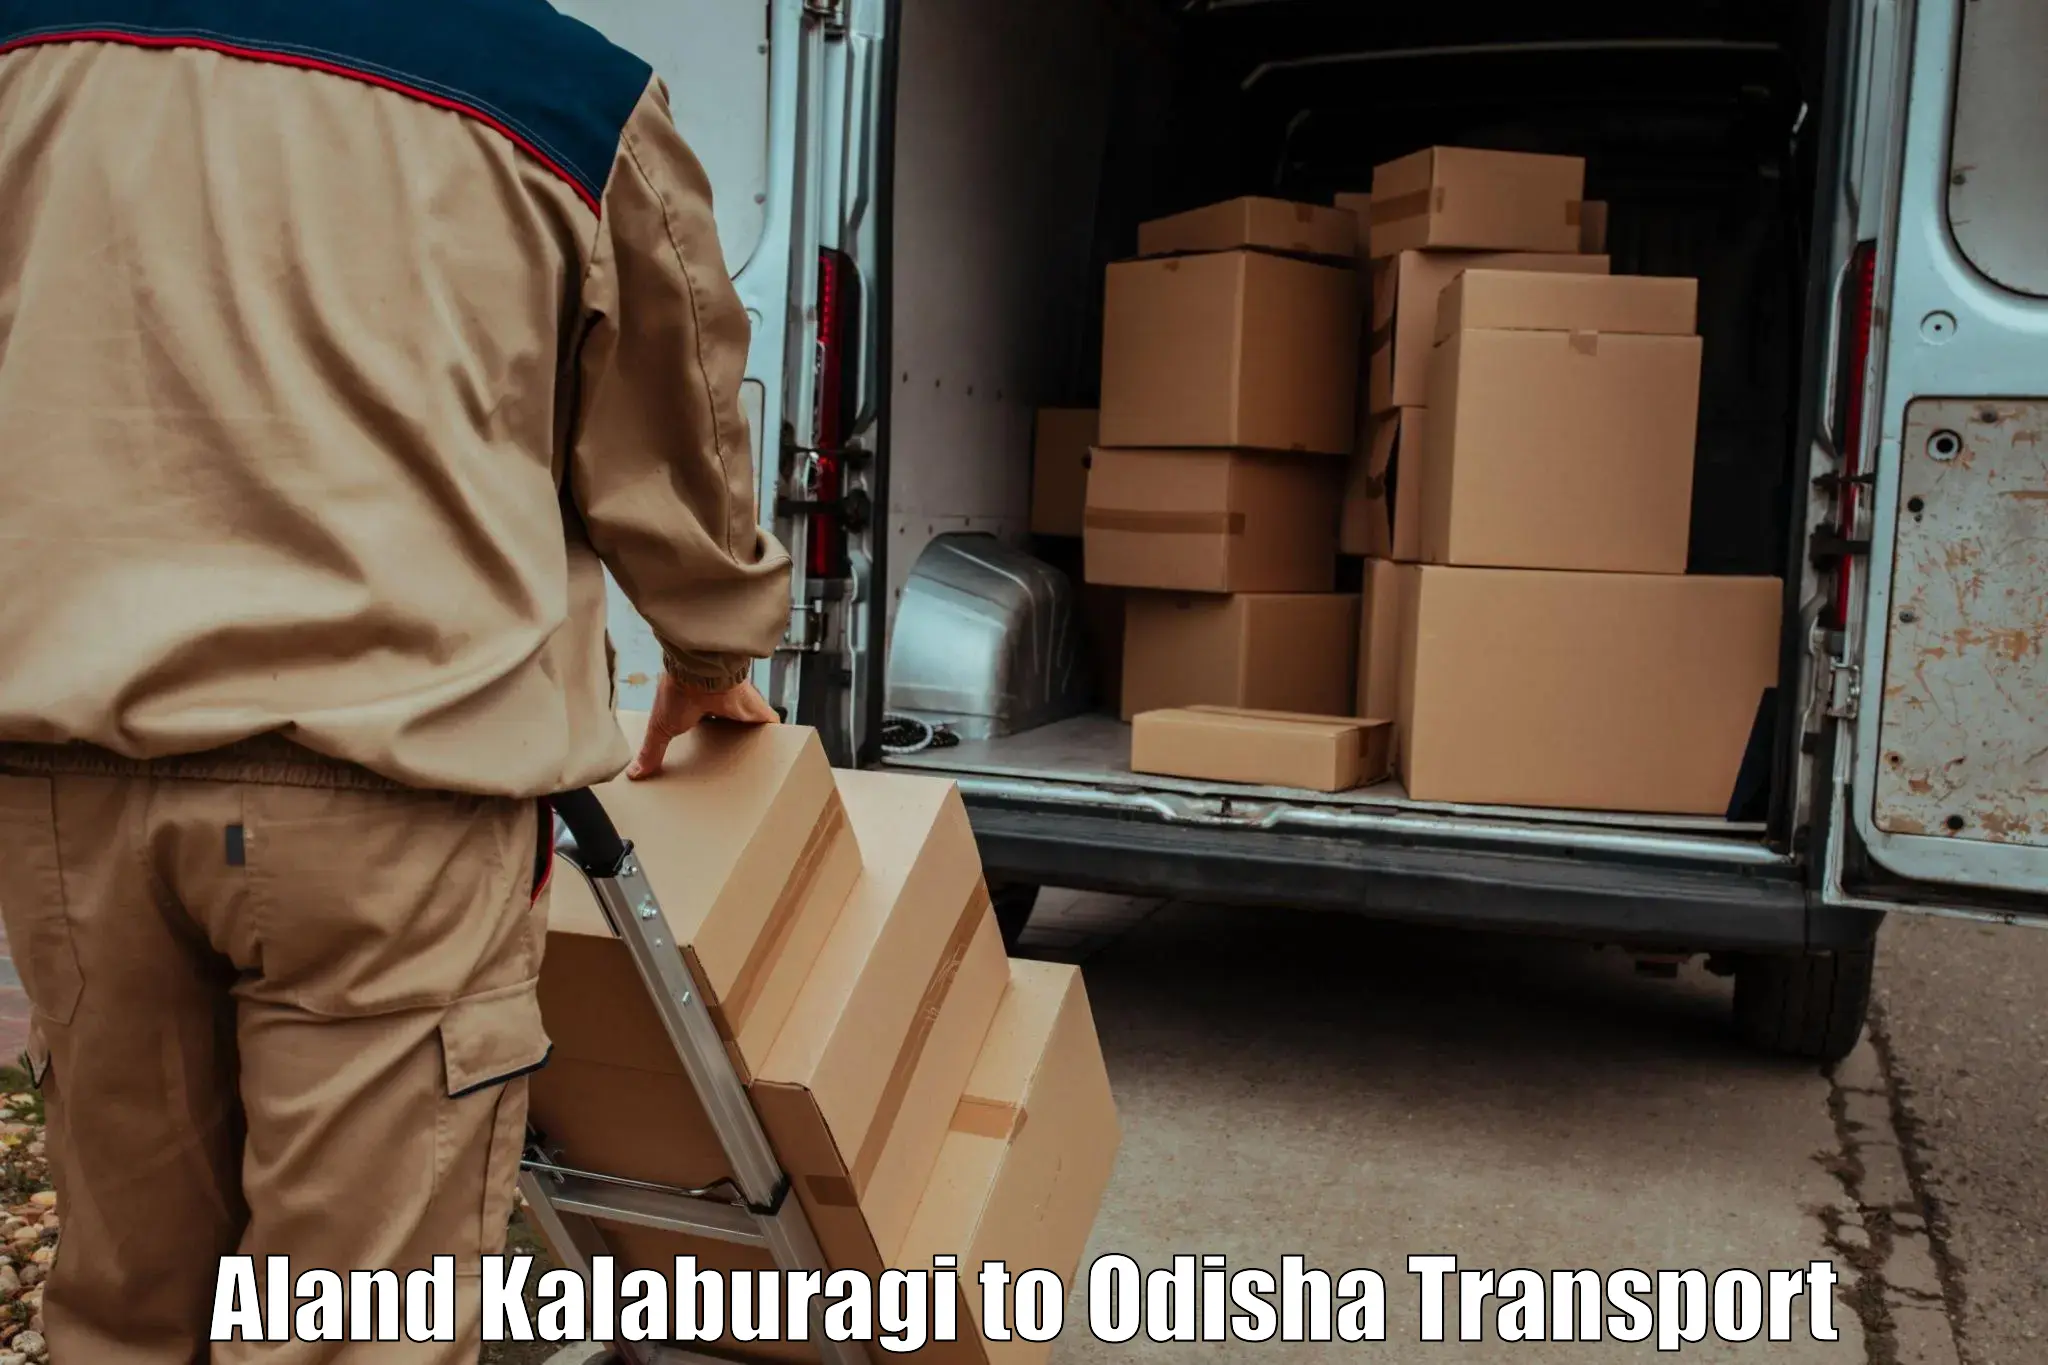 Daily parcel service transport Aland Kalaburagi to Balasore